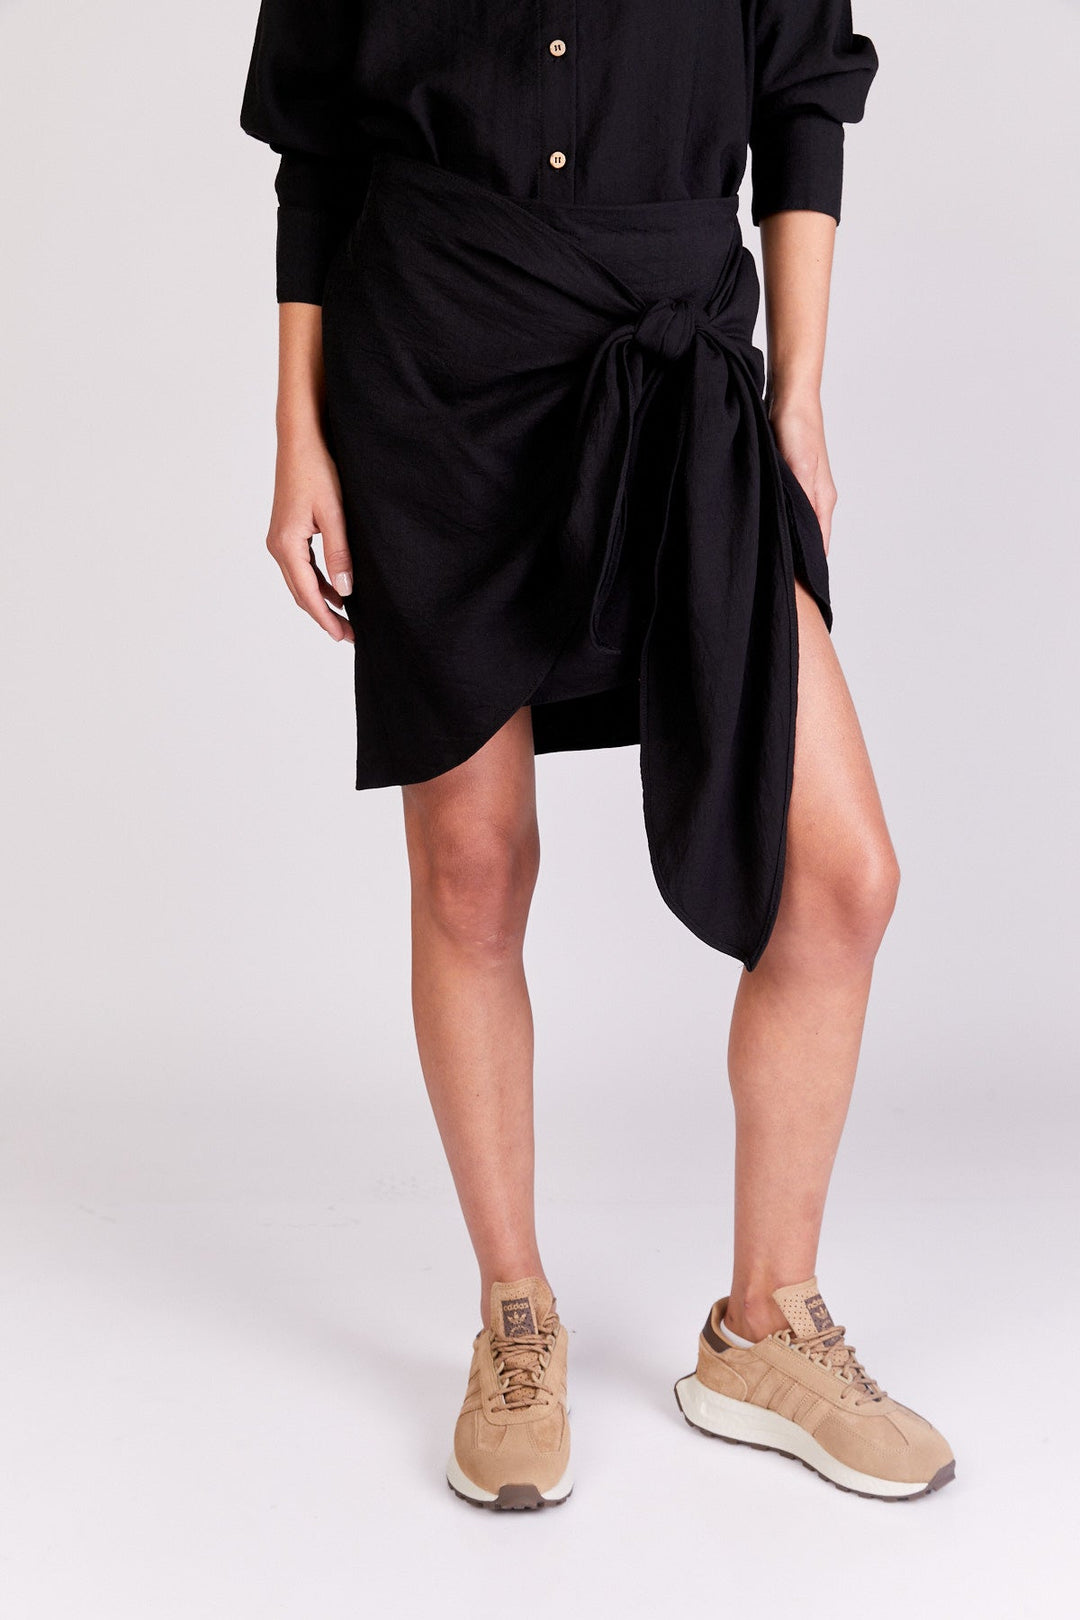 חצאית פאלם בצבע שחור - Neta Efrati